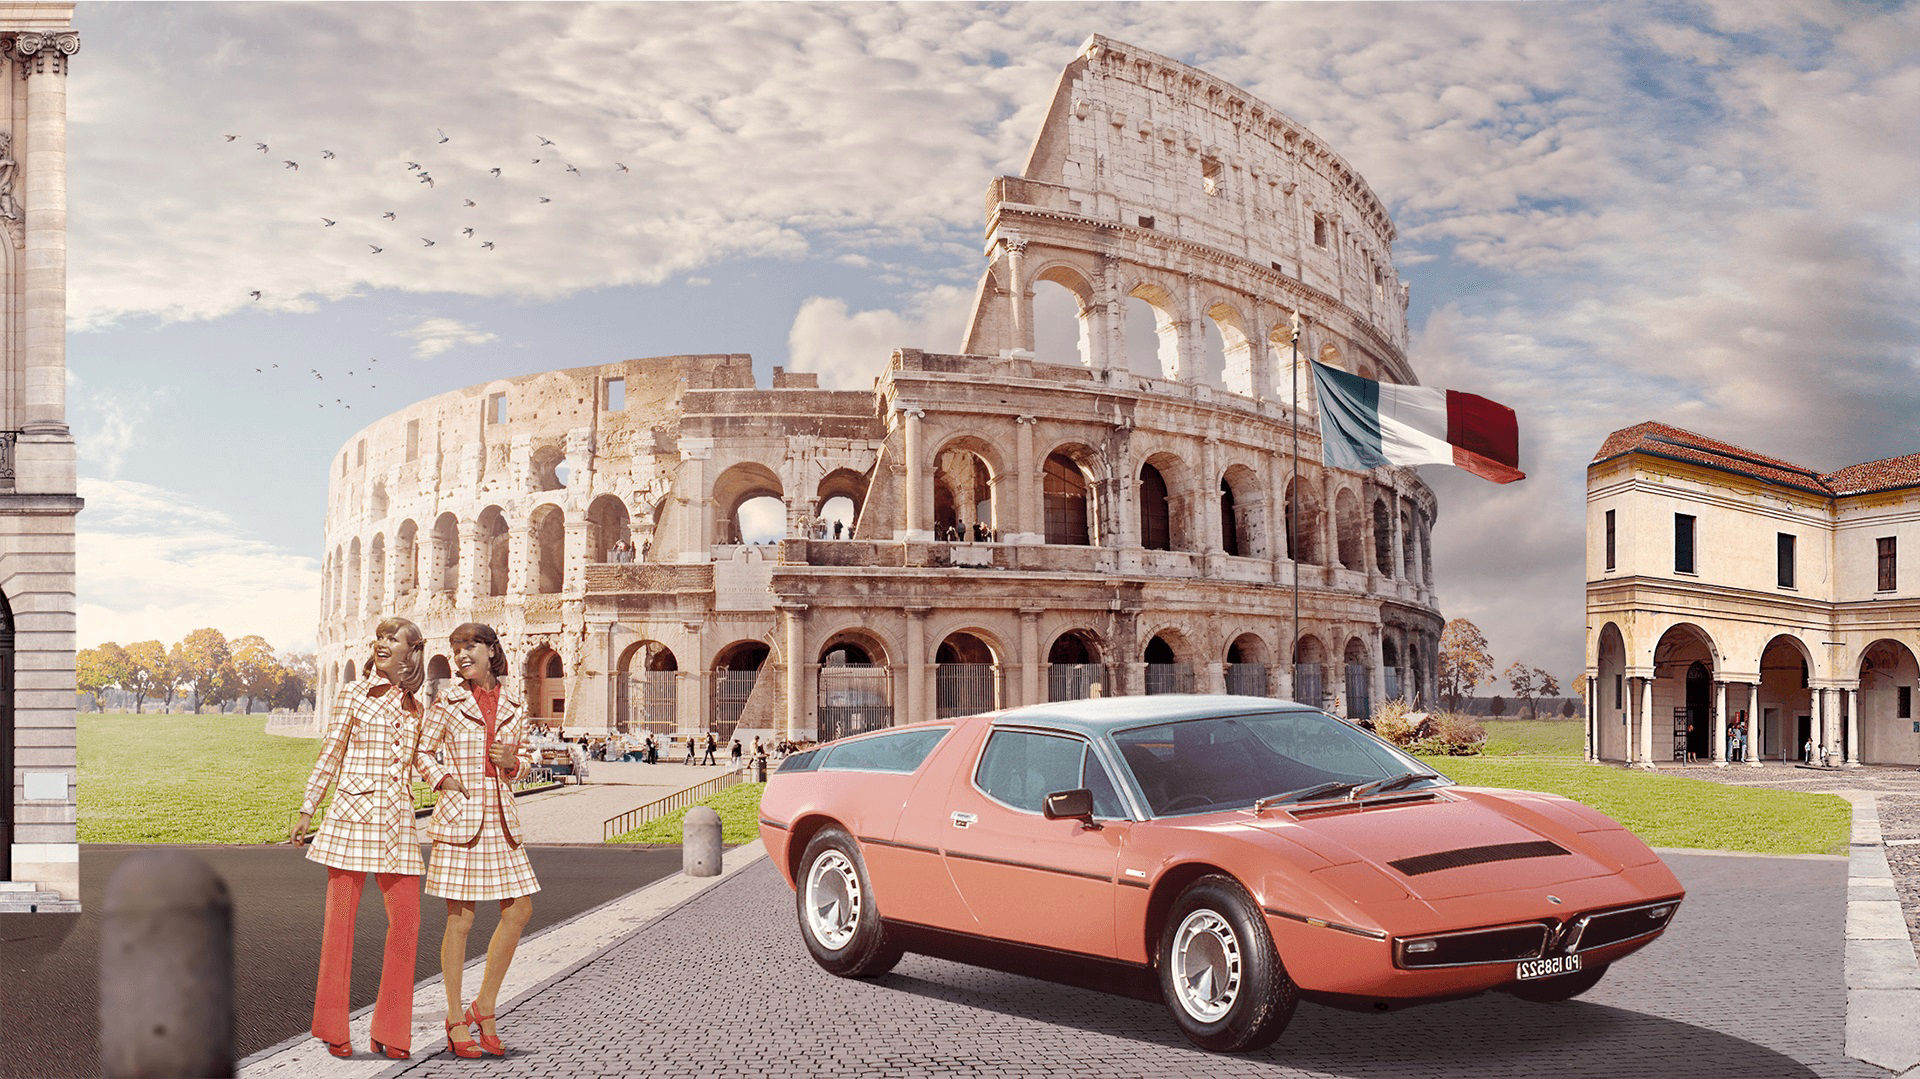 Storia di Maserati - 1970: Maserati Bora a Roma, davanti al Colosseo